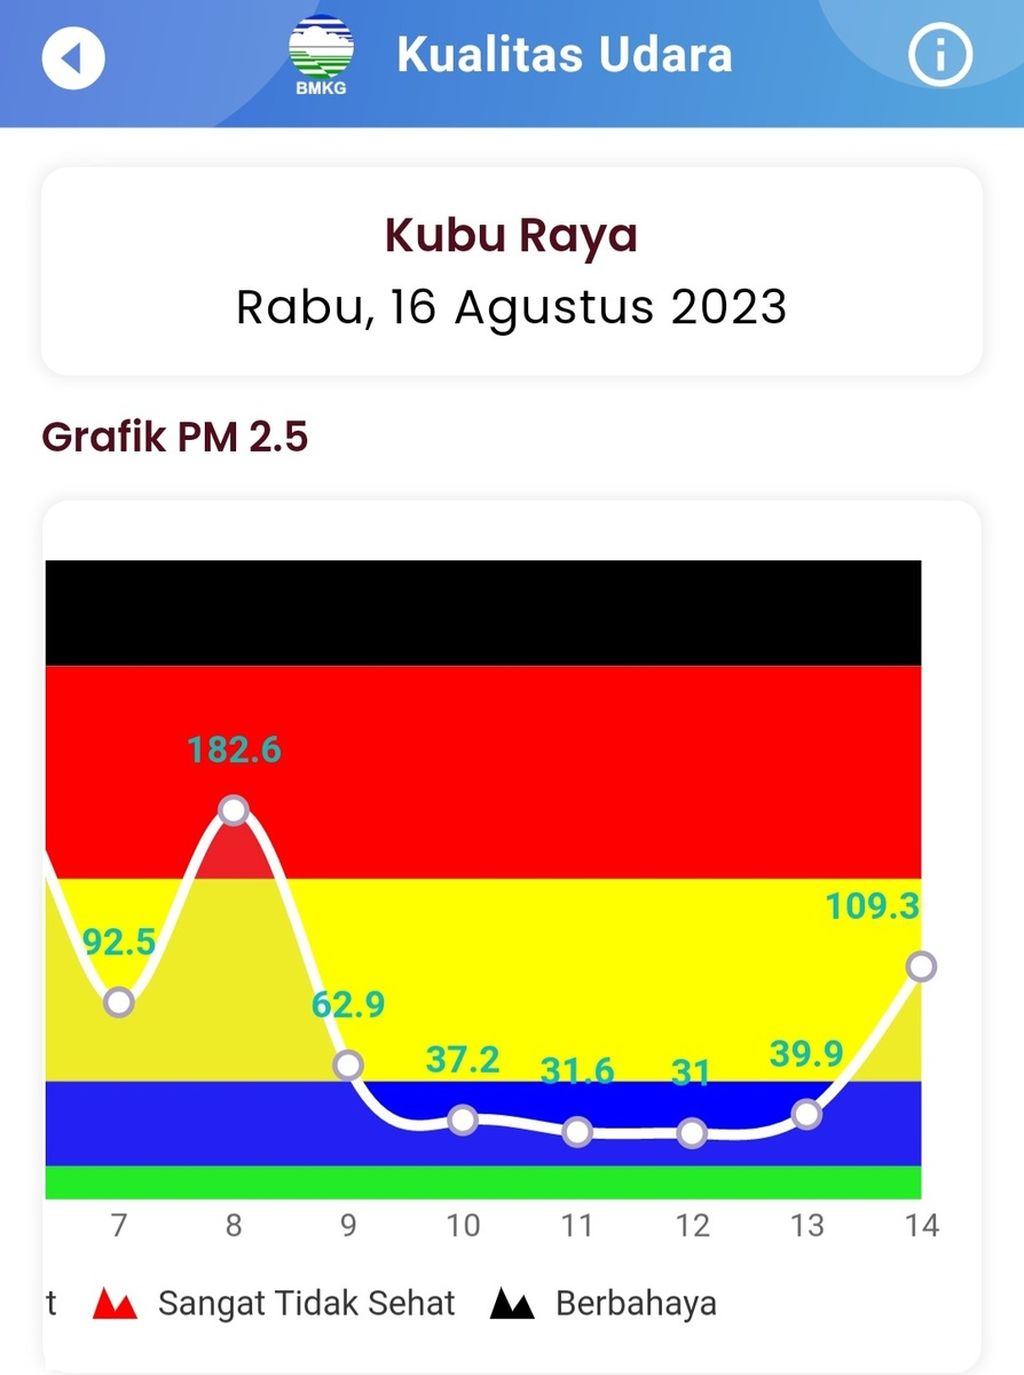 Kualitas udara di Kabupaten Kubu Raya, Kalimantan Barat, tidak sehat hingga sangat tidak sehat pada Rabu (16/8/2023).